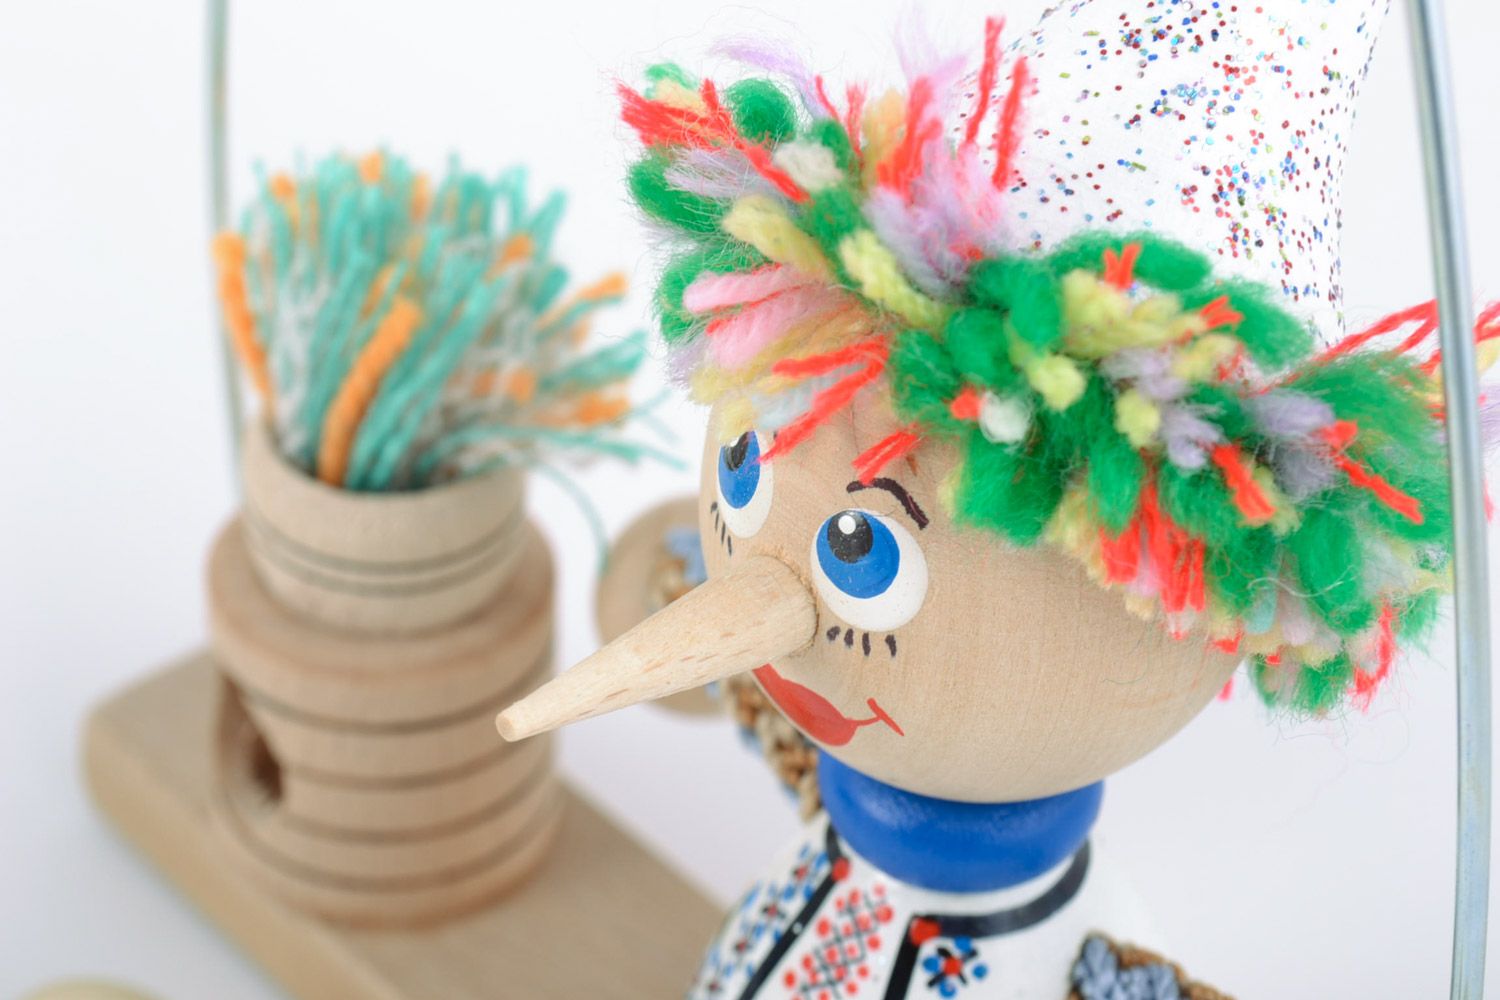 Helles schönes originelles handgemachtes Öko Spielzeug aus Holz Junge auf Bank  foto 3